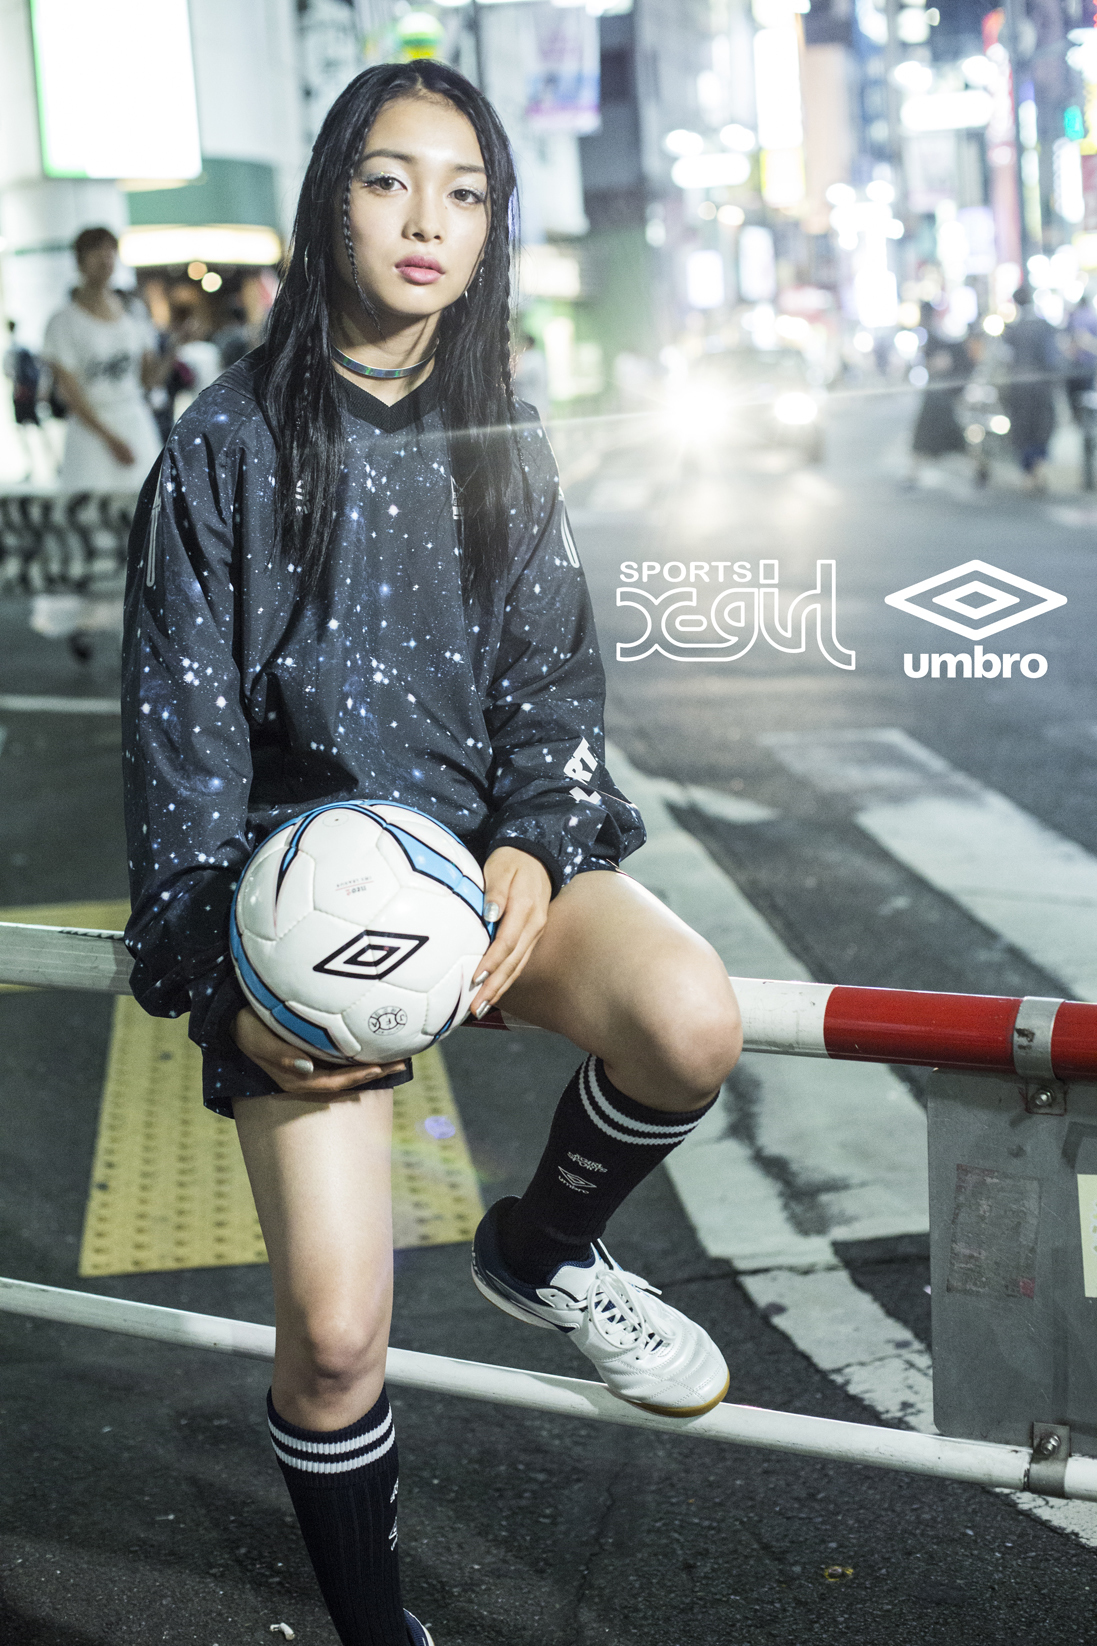 X Girl Sports と Umbro のコラボアイテム9 1発売 宇宙柄や両ブランドのロゴを組み合わせたコレクション 株式会社ビーズインターナショナルのプレスリリース